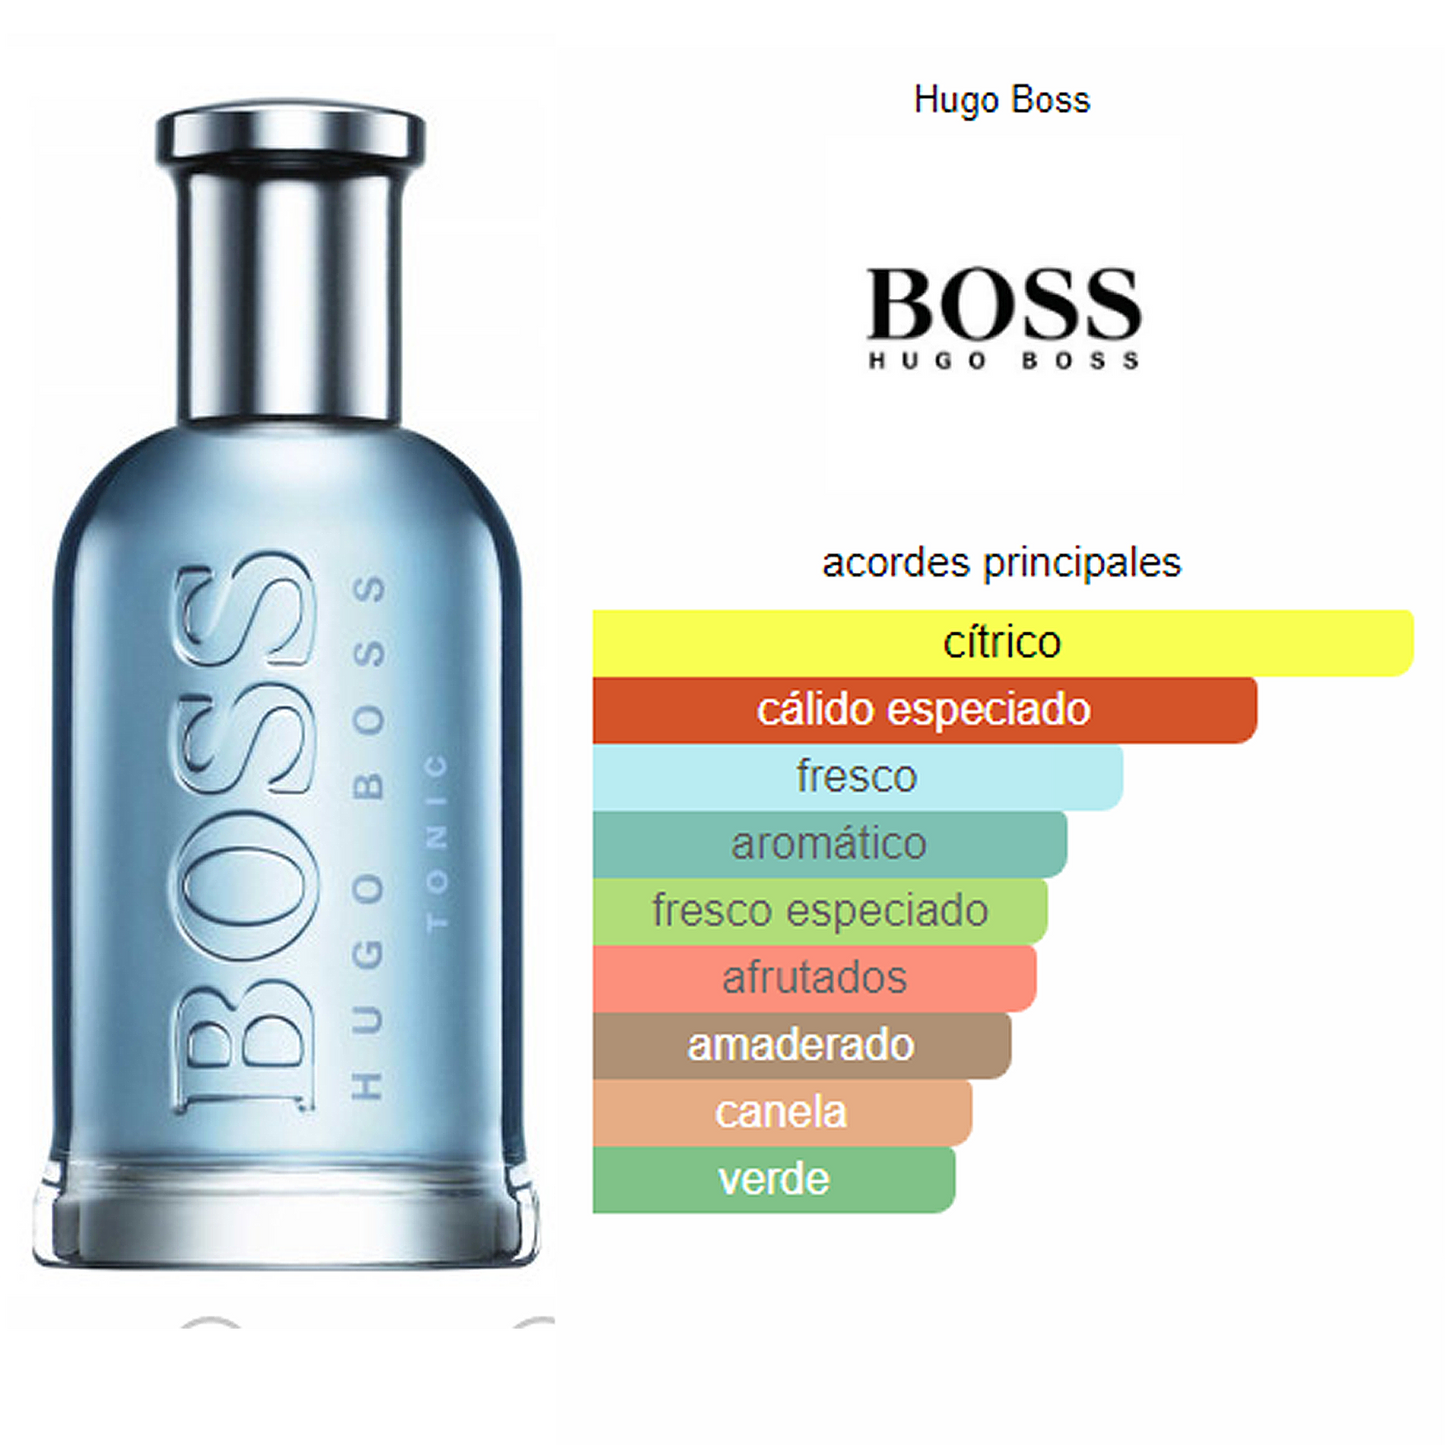 Perfume Bottled Tonic 200ml Edt Para Hombre Hugo Boss®